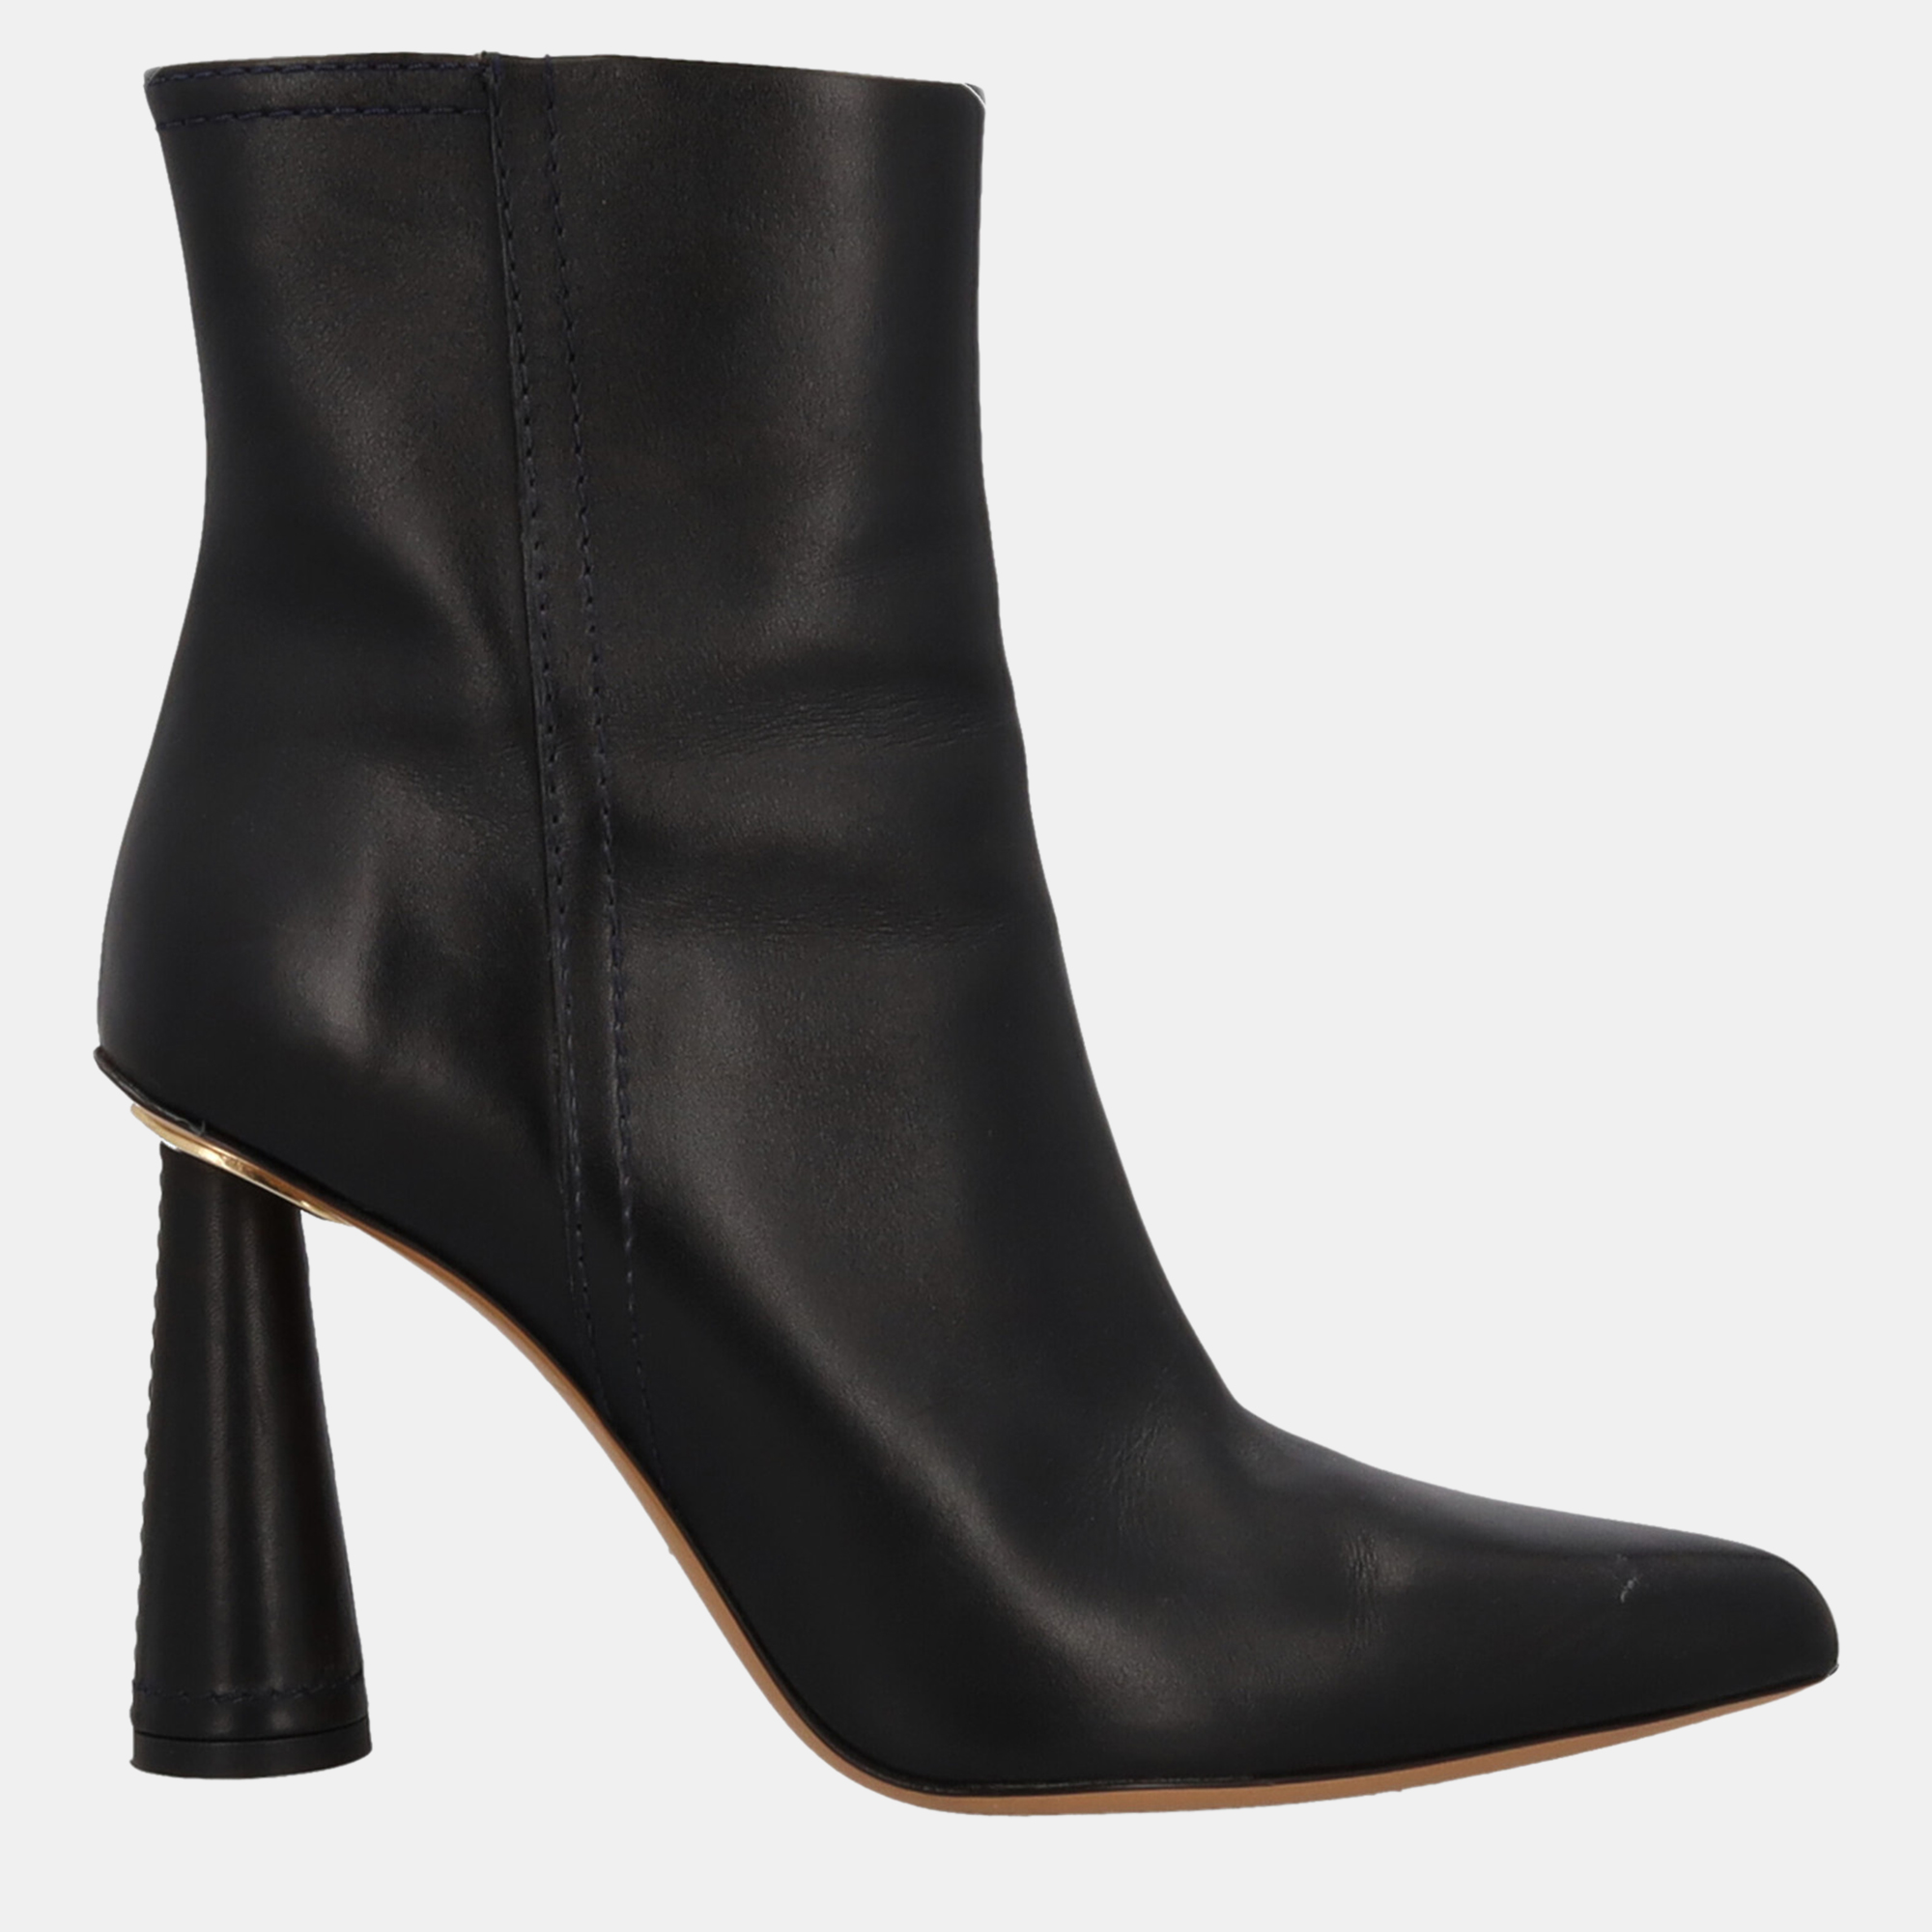 Jacquemus  Women's Leather Ankle Boots - Black - EU 39